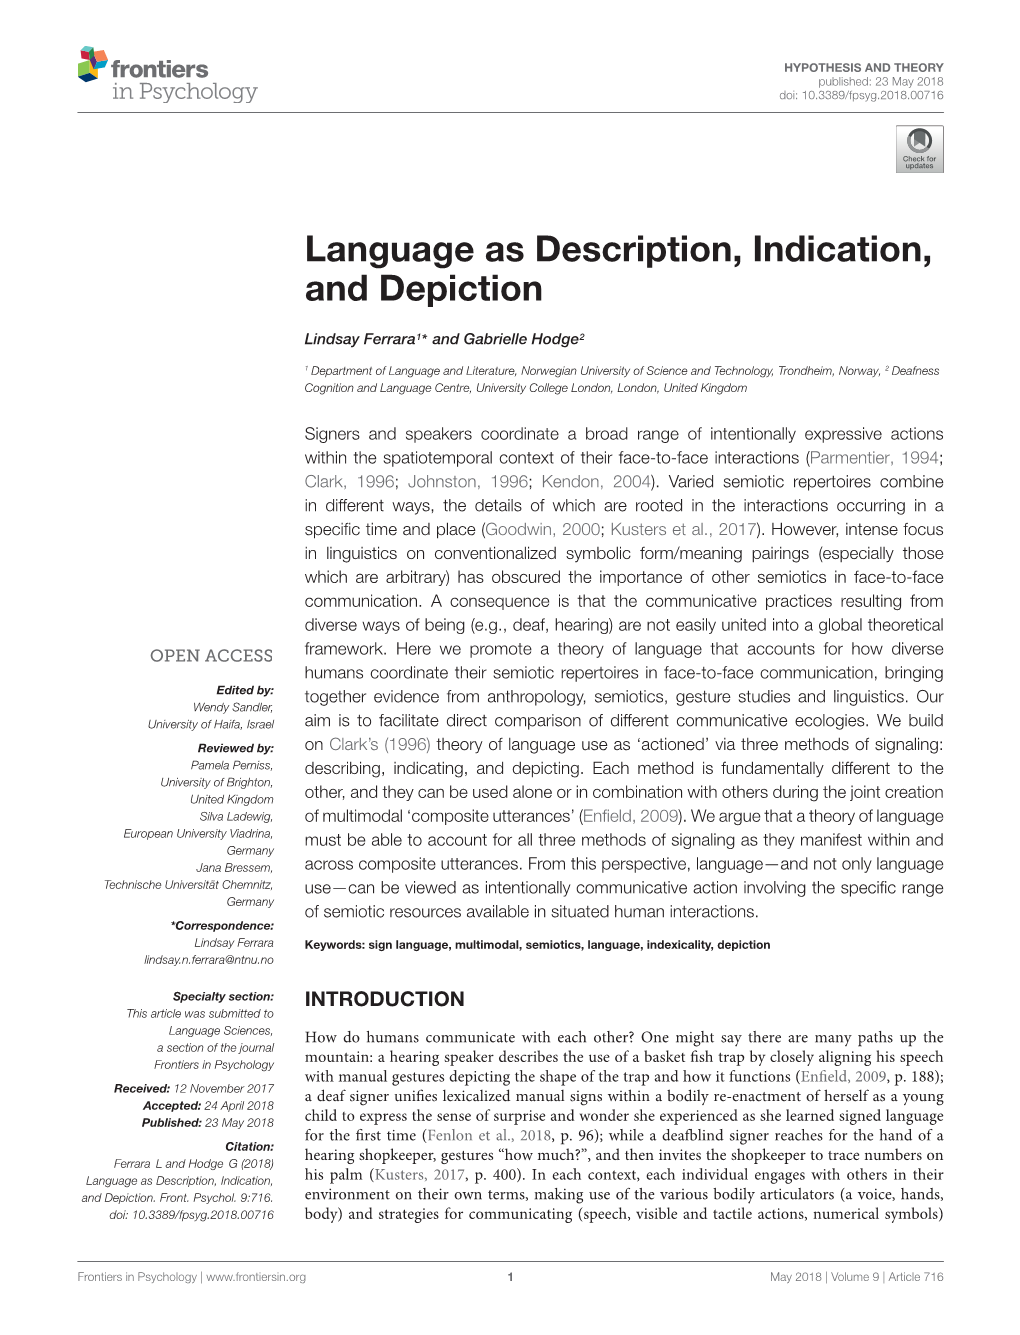 Language As Description, Indication, and Depiction